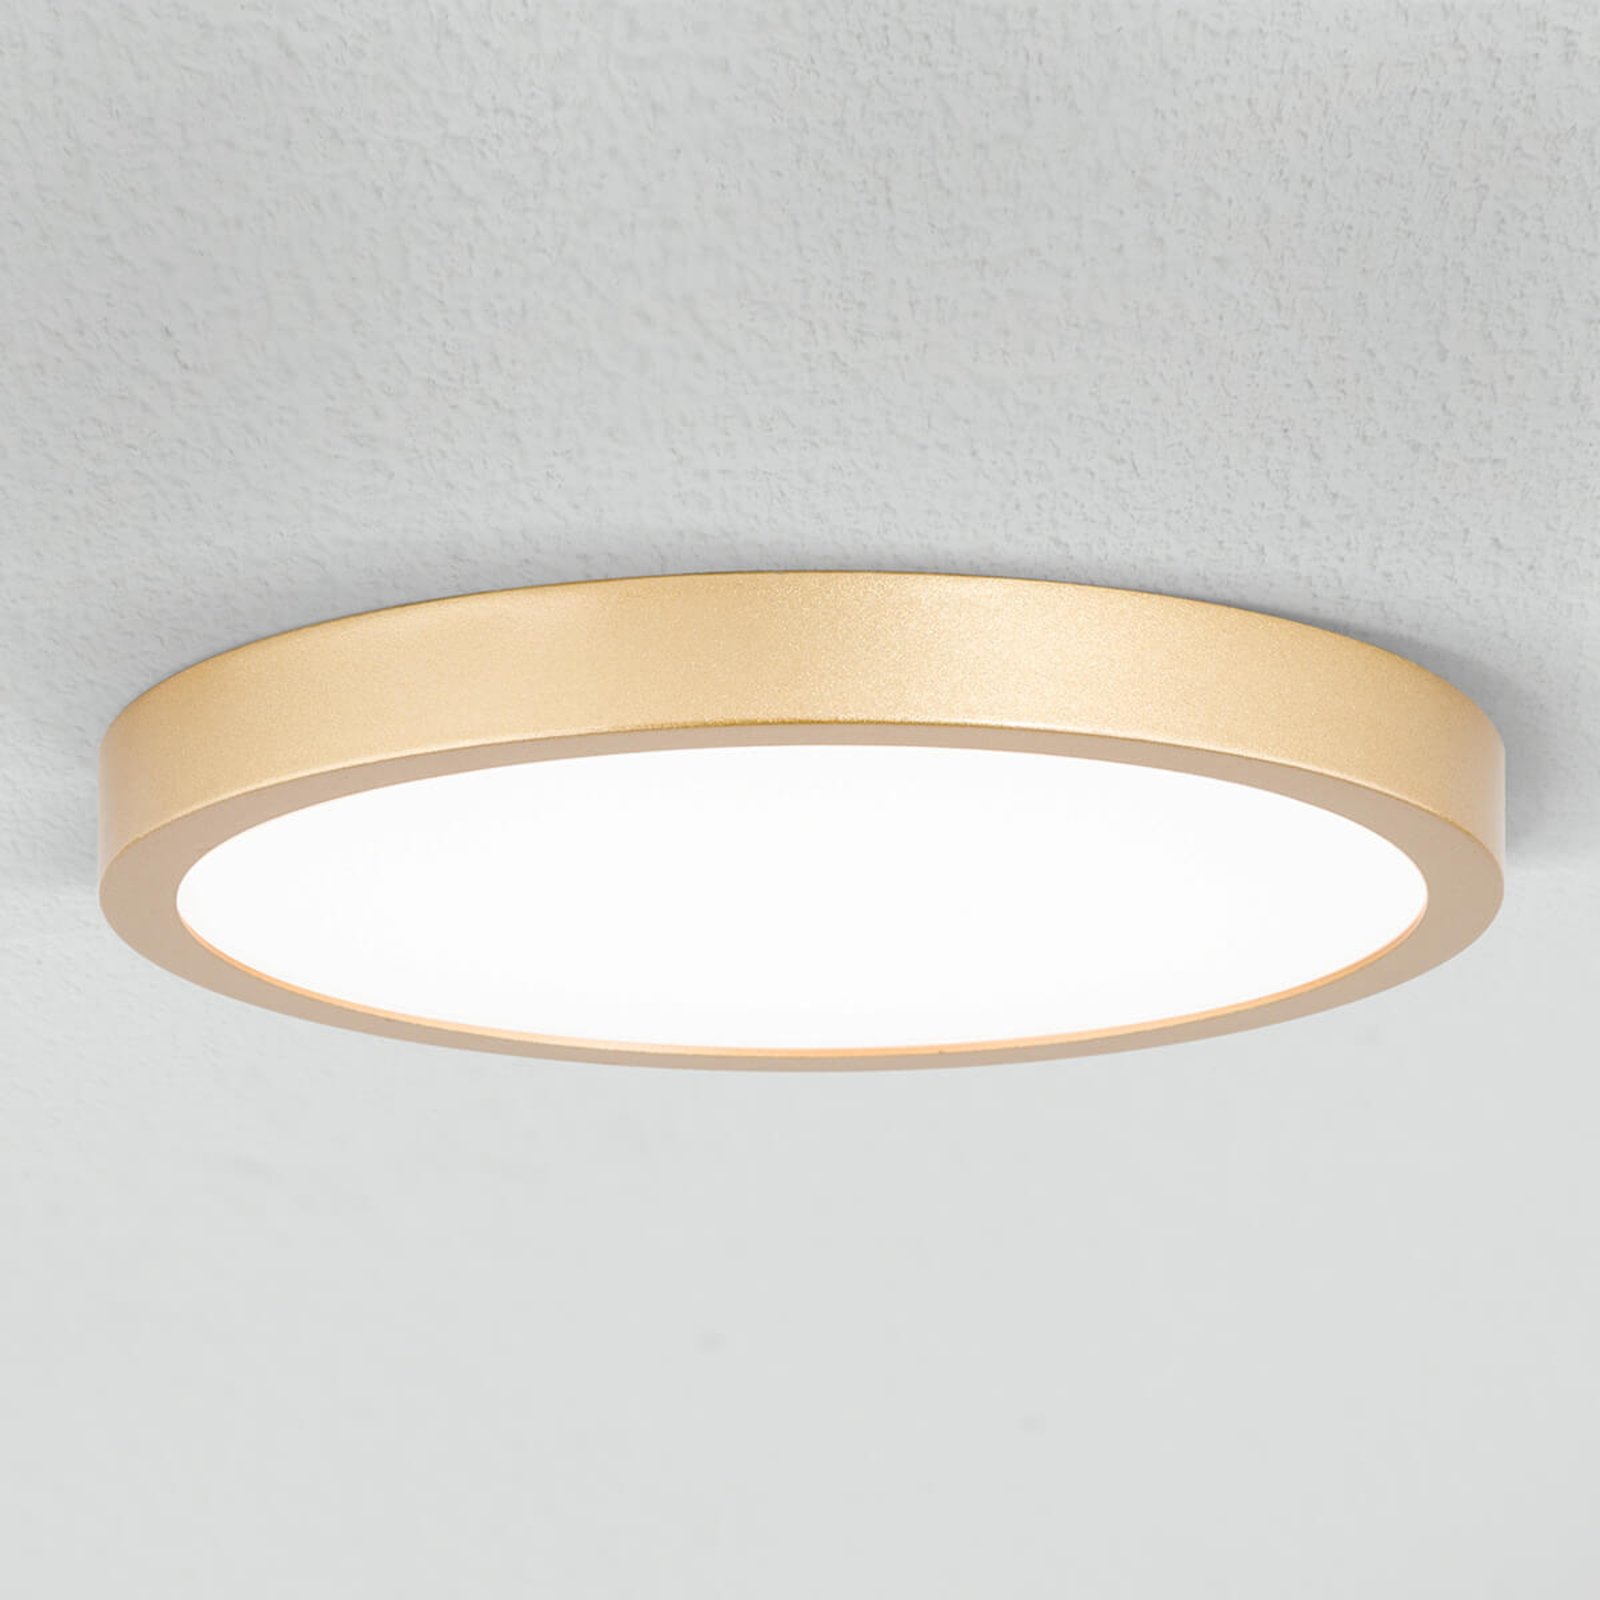 LED-Deckenleuchte Vika, rund, gold matt, Ø 23cm